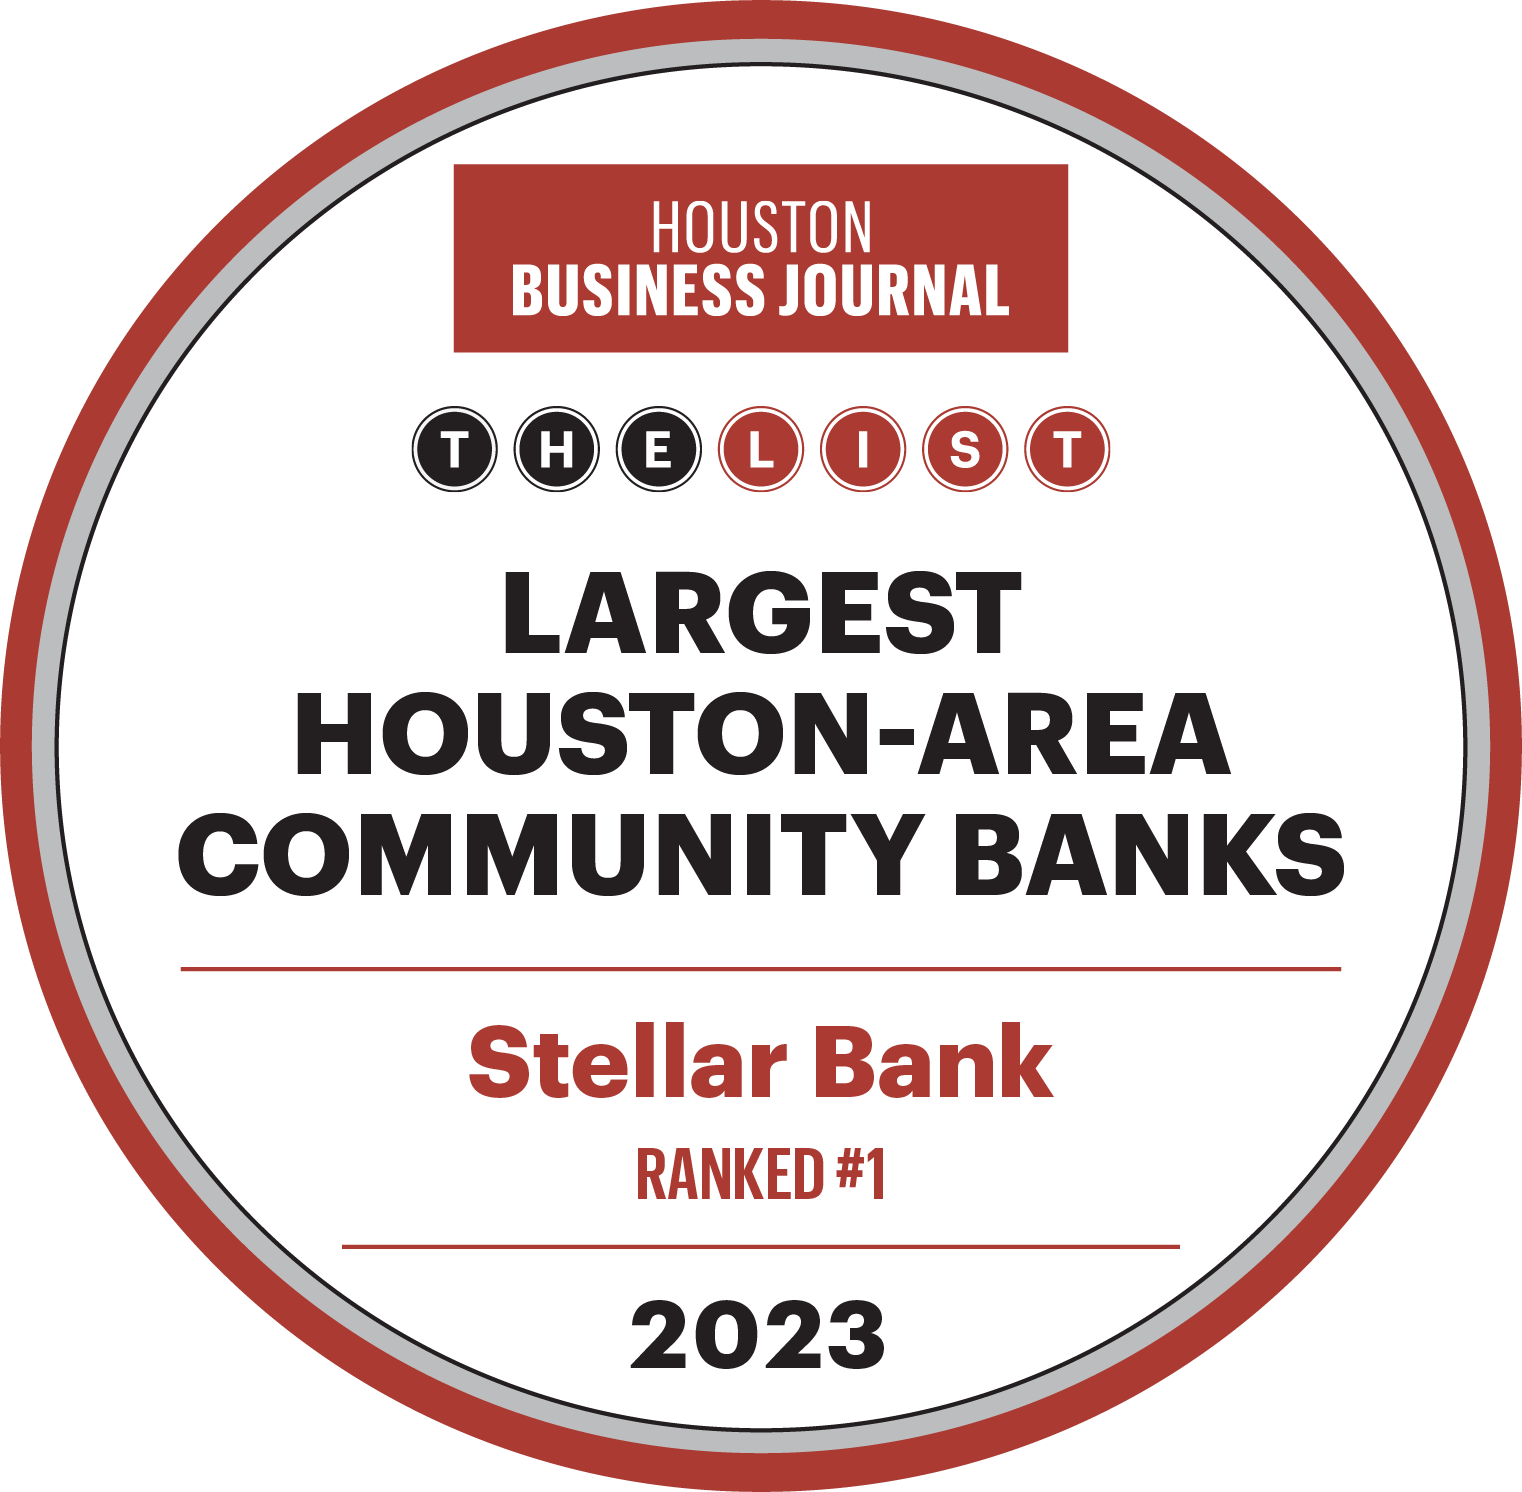 HBJ Largest Houston-Area Community Banks Awards